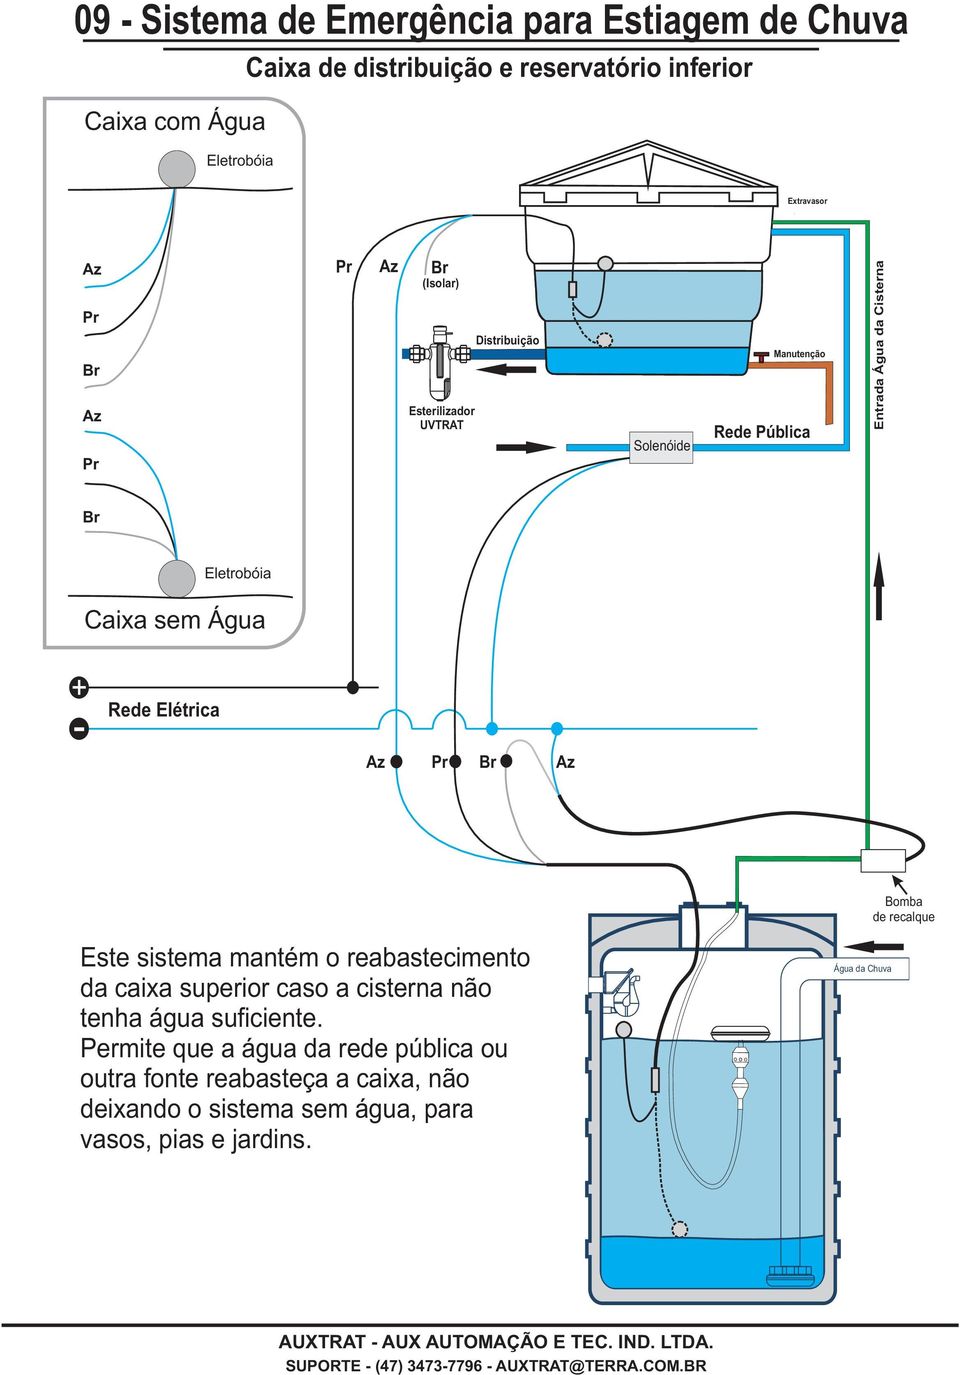 Rede Elétrica Bomba de recalque Este sistema mantém o reabastecimento da caixa superior caso a cisterna não tenha água suficiente.